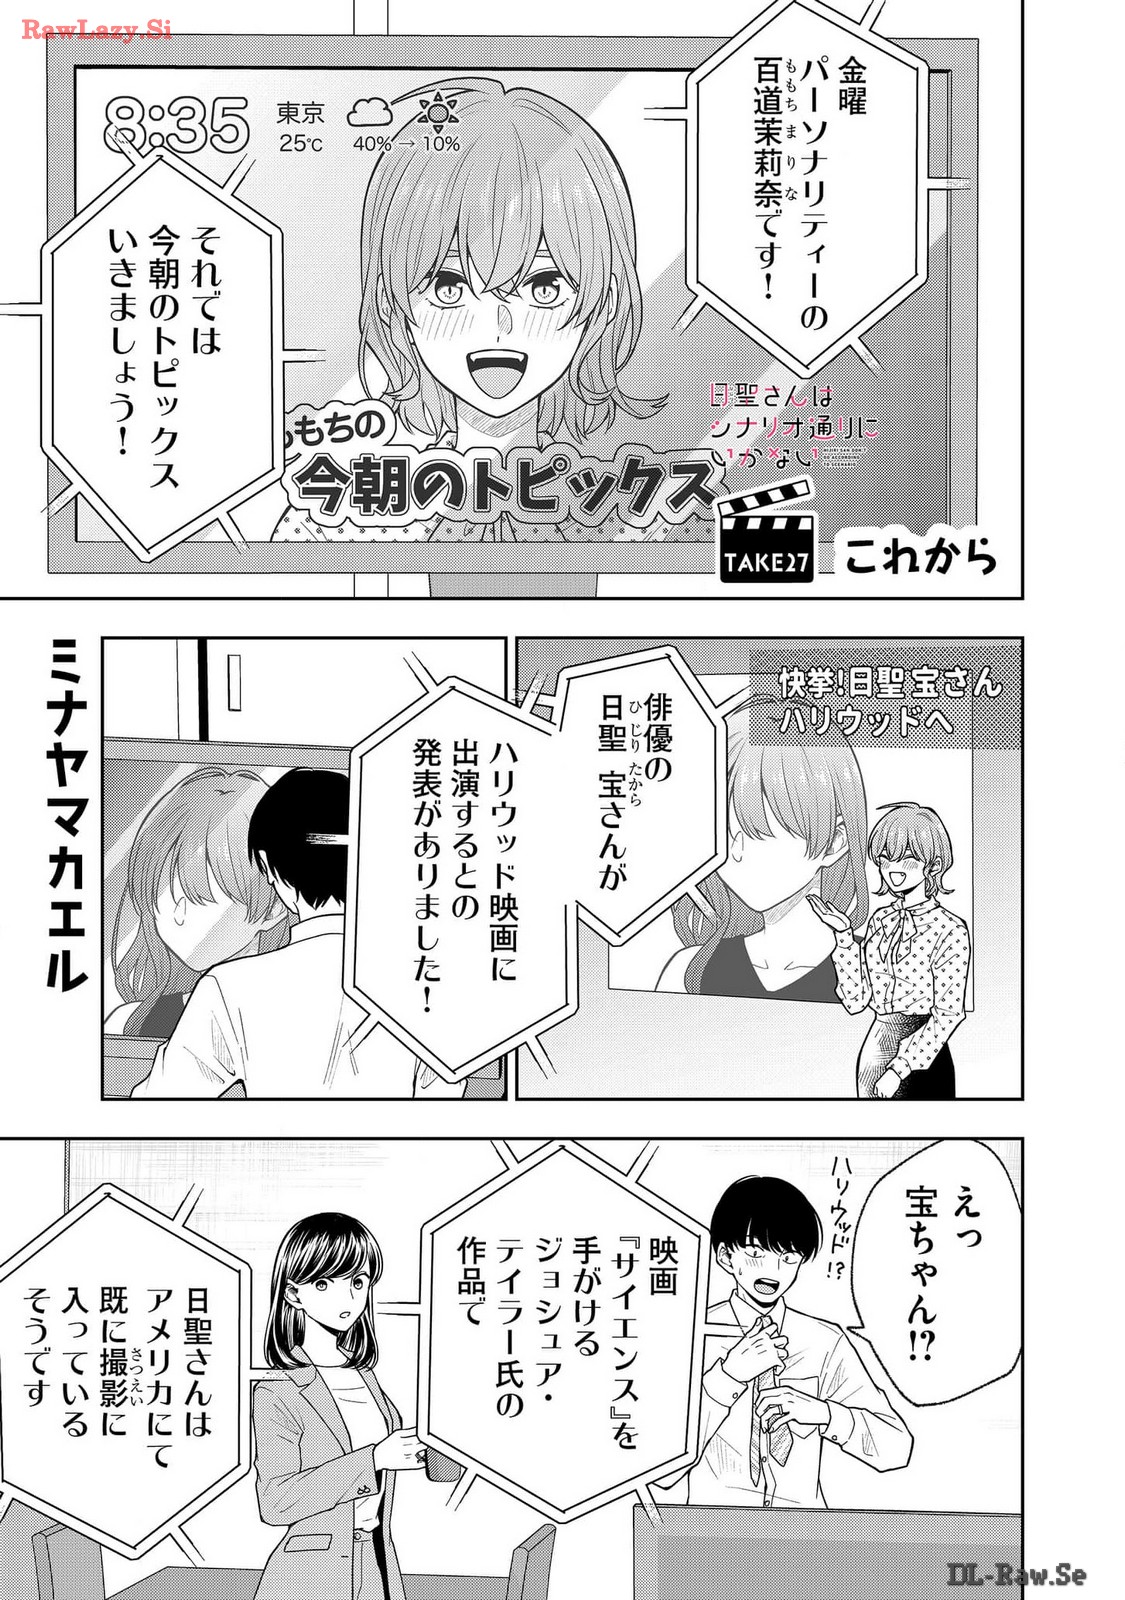 Hijiri-san wa Scenario-douri ni Ikanai - Chapter 27 - Page 1